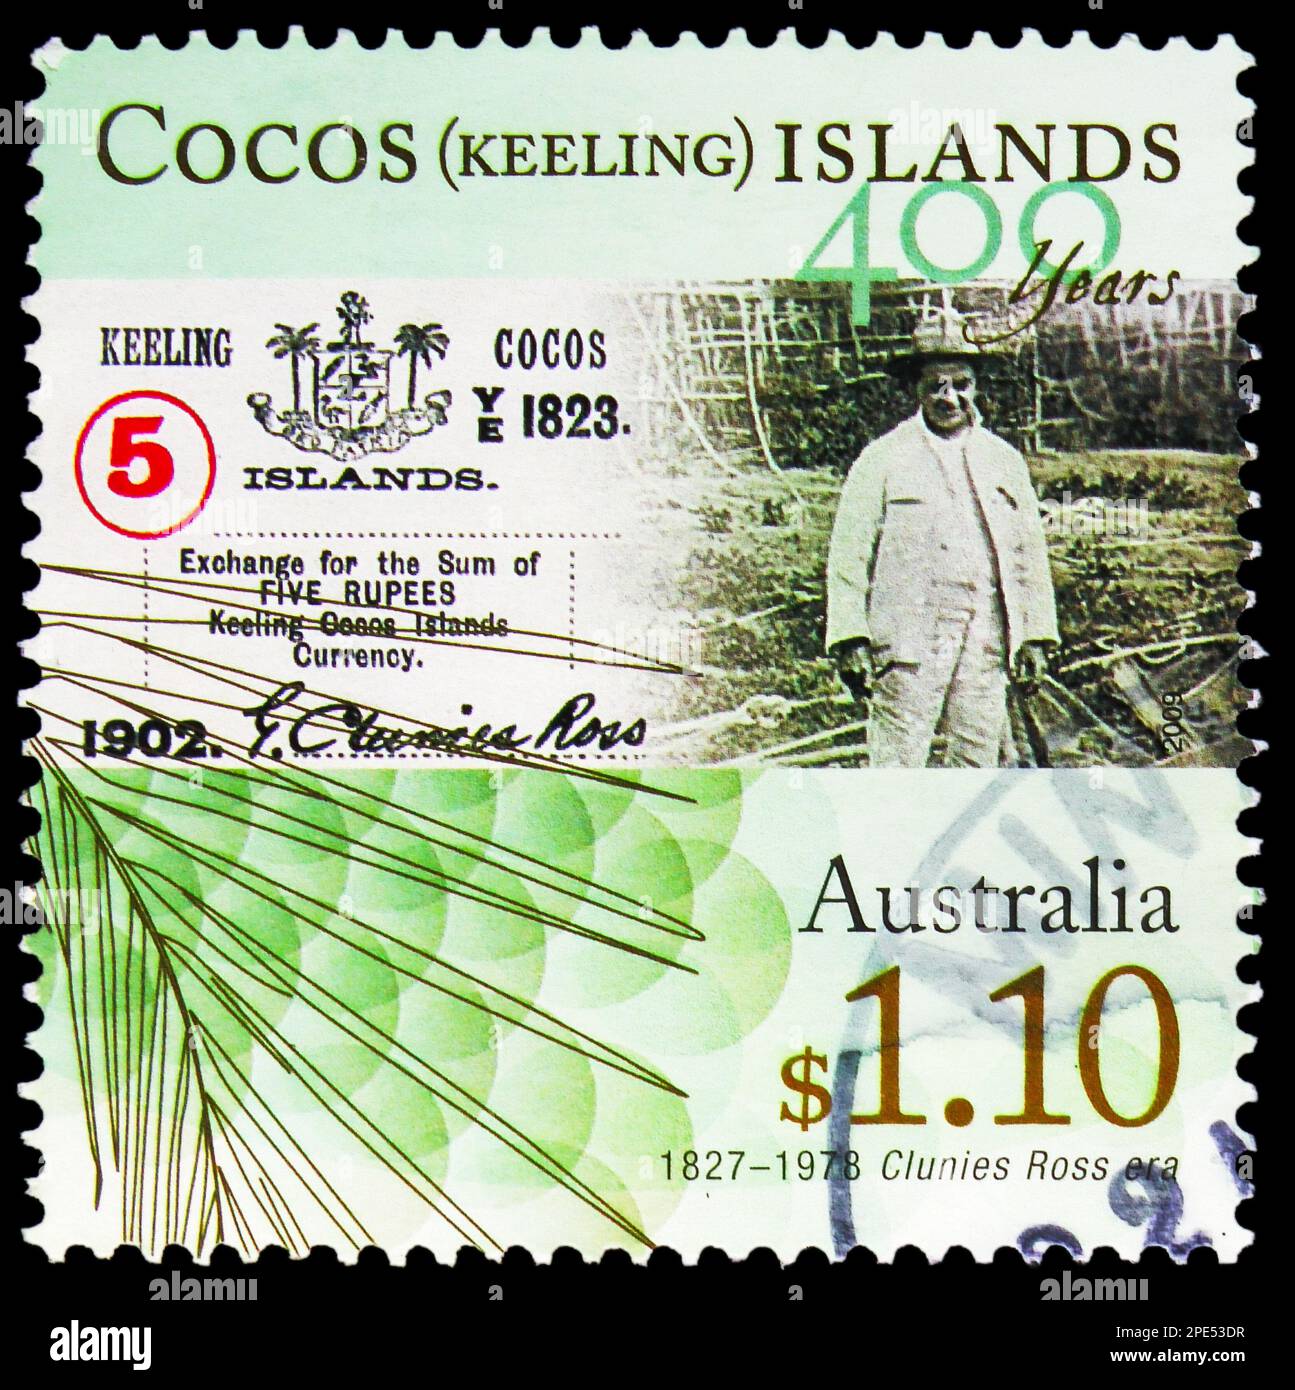 MOSKAU, RUSSLAND - 17. FEBRUAR 2023: Briefmarken gedruckt auf den Cocos (Keeling) Islands zeigt Coconut Labourer, 400. Jubiläum von 1. European Sightin Stockfoto